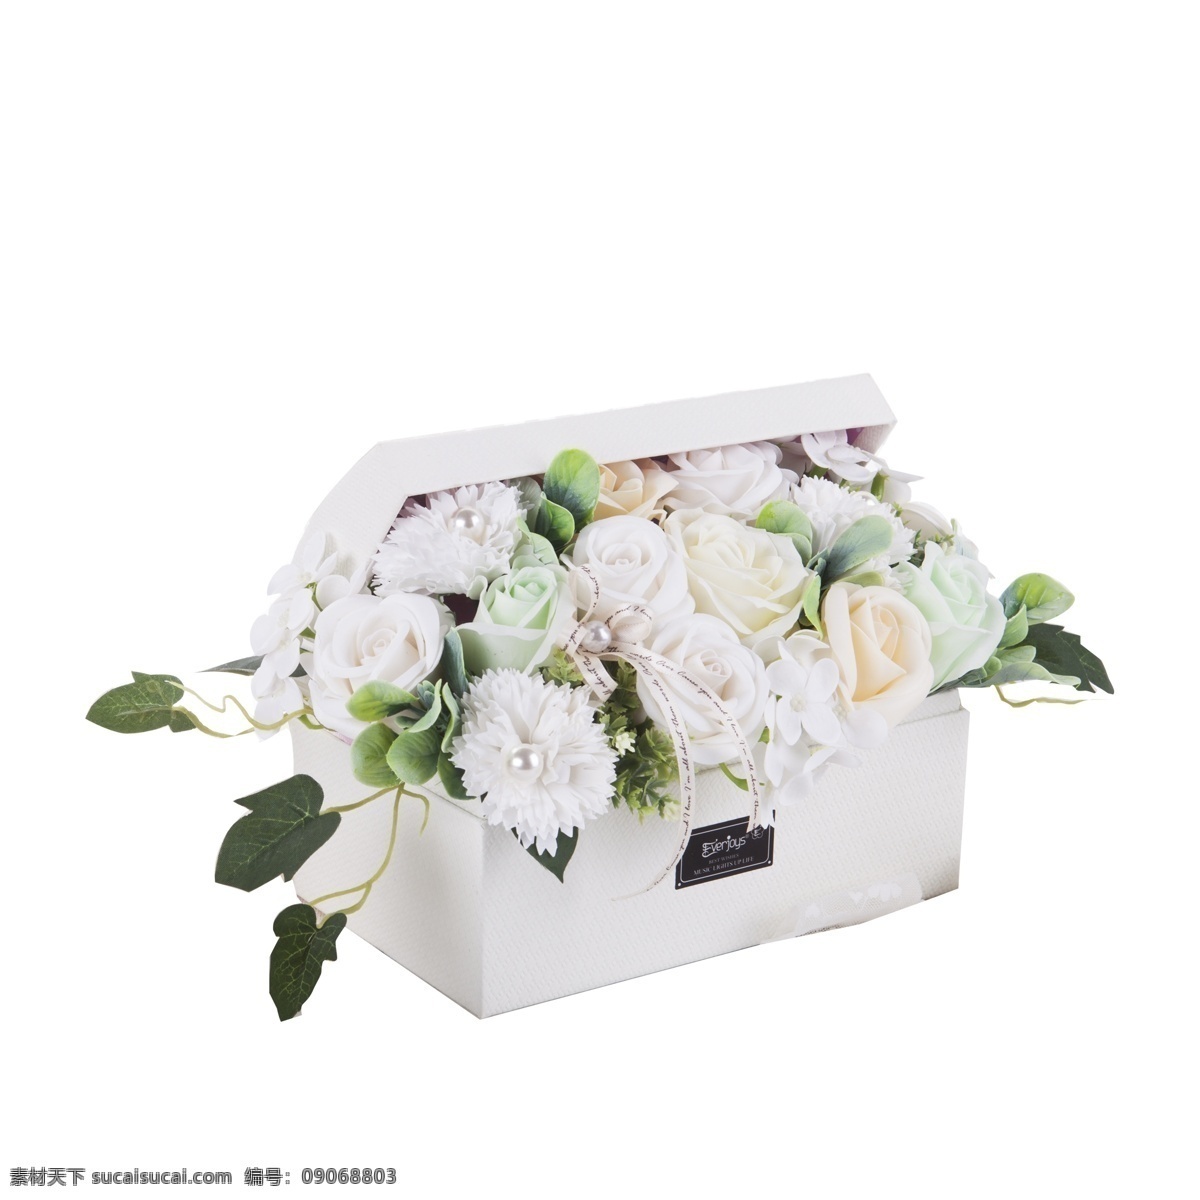 漂亮 花朵 礼盒 免 抠 图 漂亮的花朵 白色花朵 新鲜花朵 情人节礼盒 新鲜的礼盒 免抠图